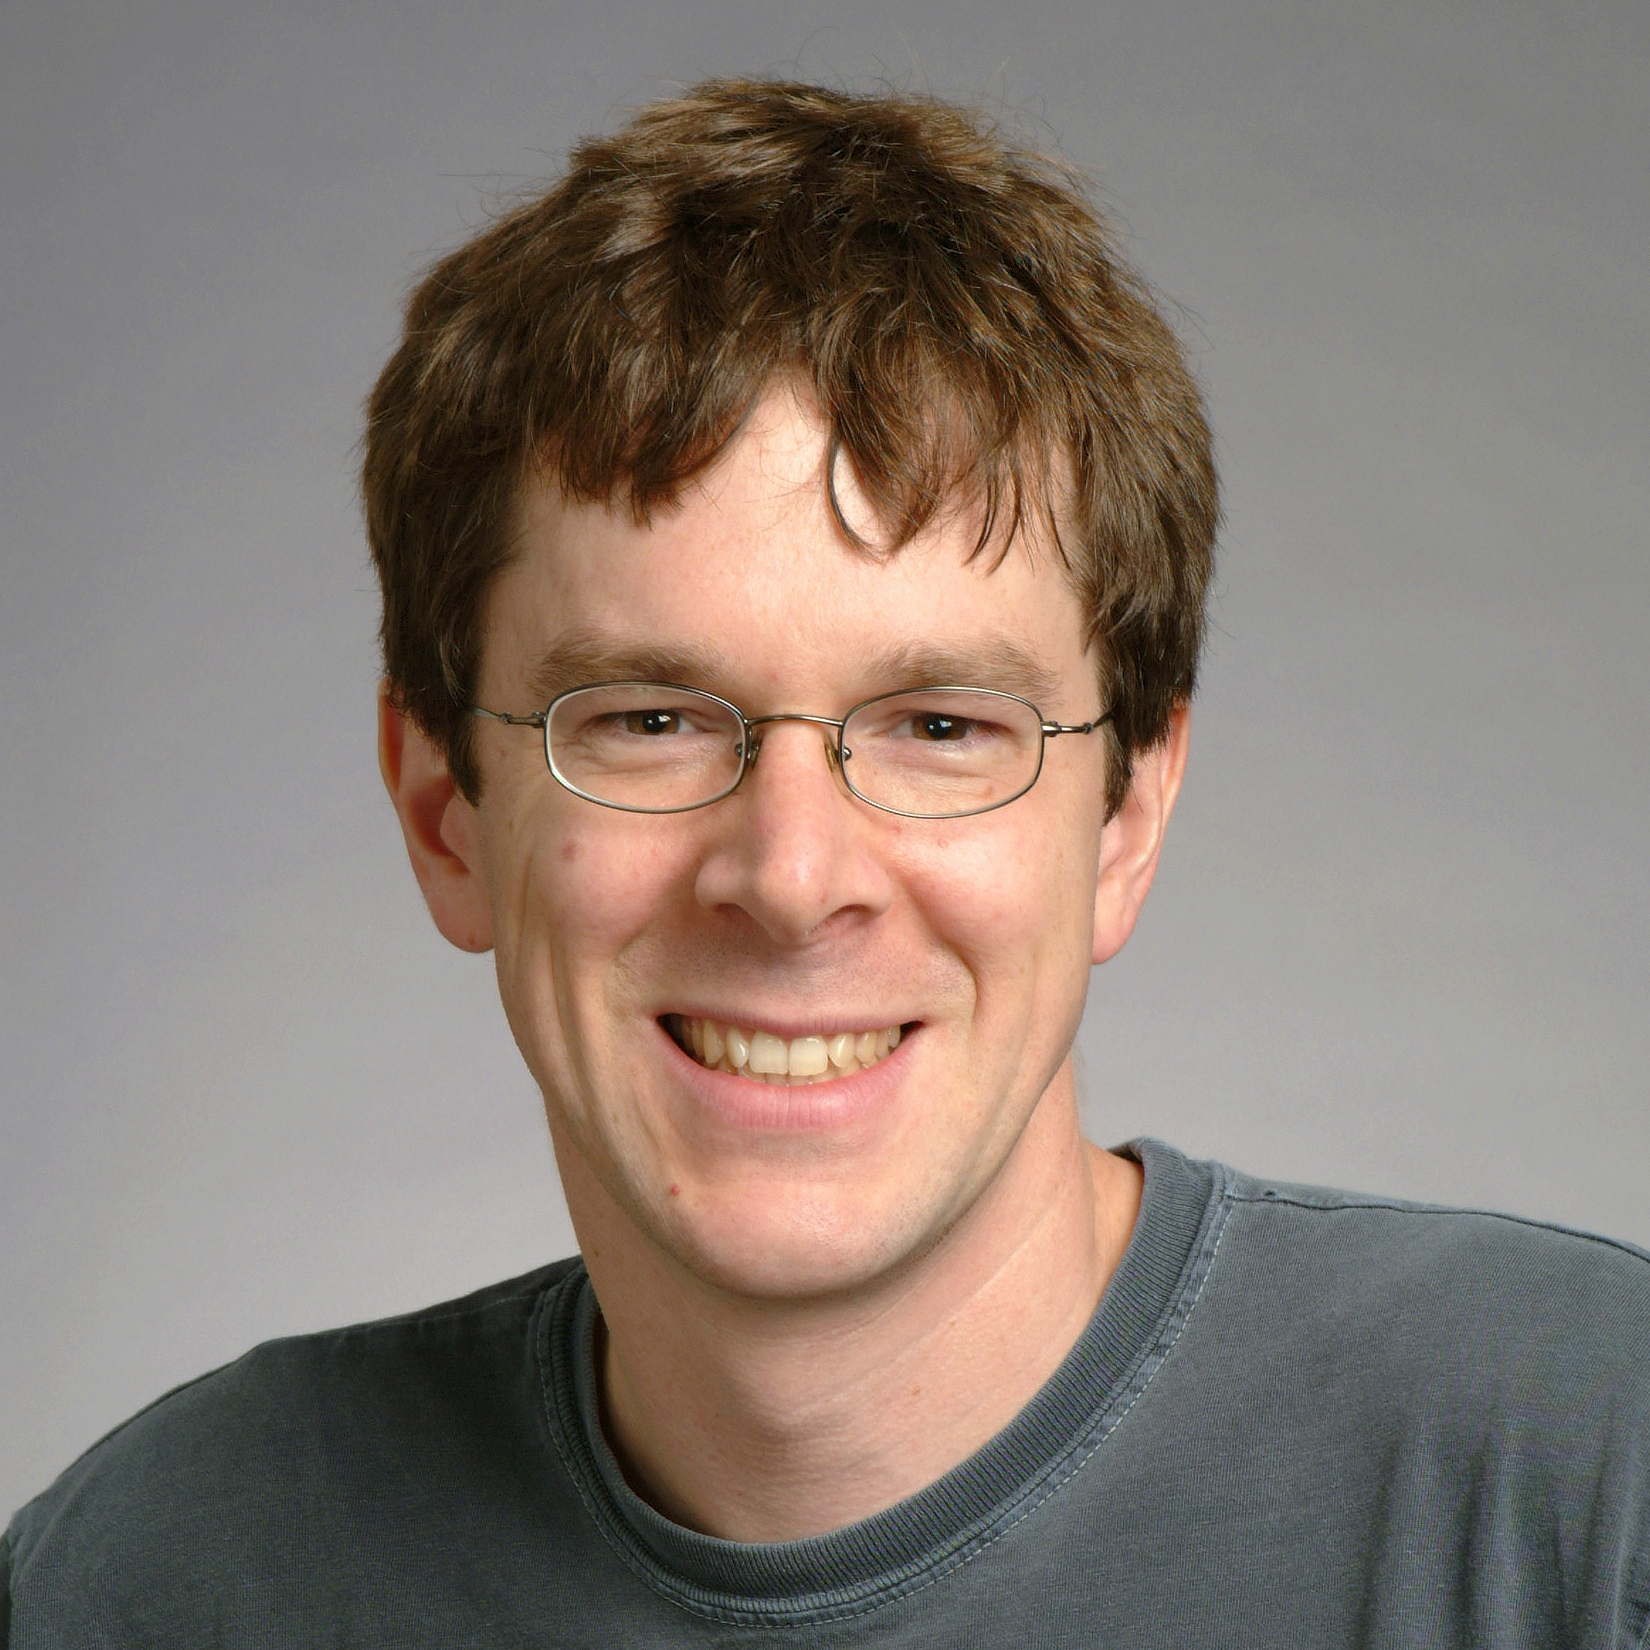 Robert Morris, người thả loại sâu máy tính gây nghẽn mạng internet đầu tiên trên thế giới, hiện đang làm việc tại MIT. Ảnh: MIT.